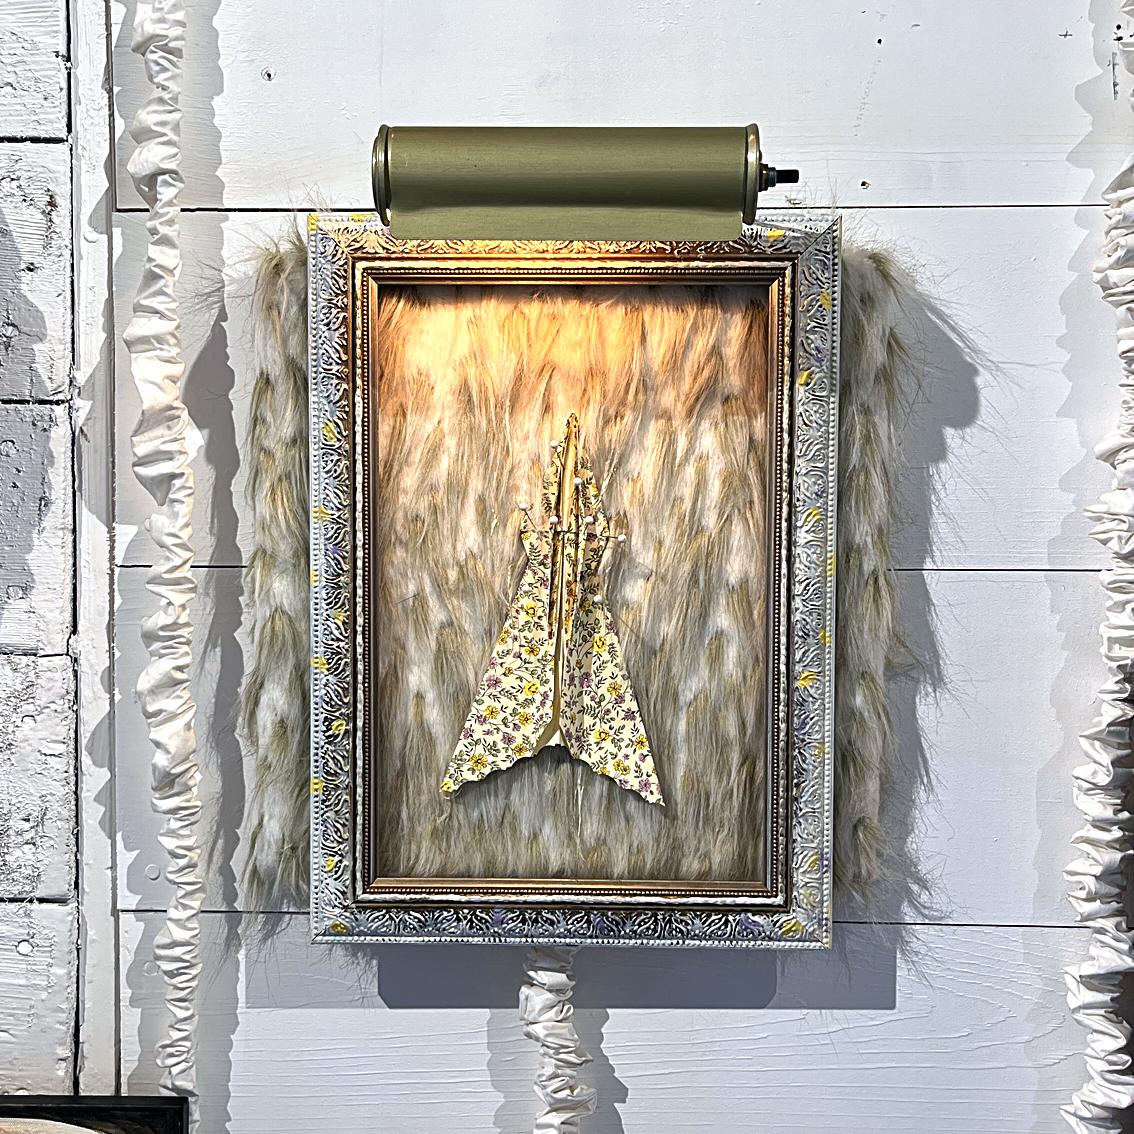 « Specimen », cadre avec lampe électrique, fausse fourrure, papier, épingles, sur carton - Assemblage Sculpture par Heather Nicol